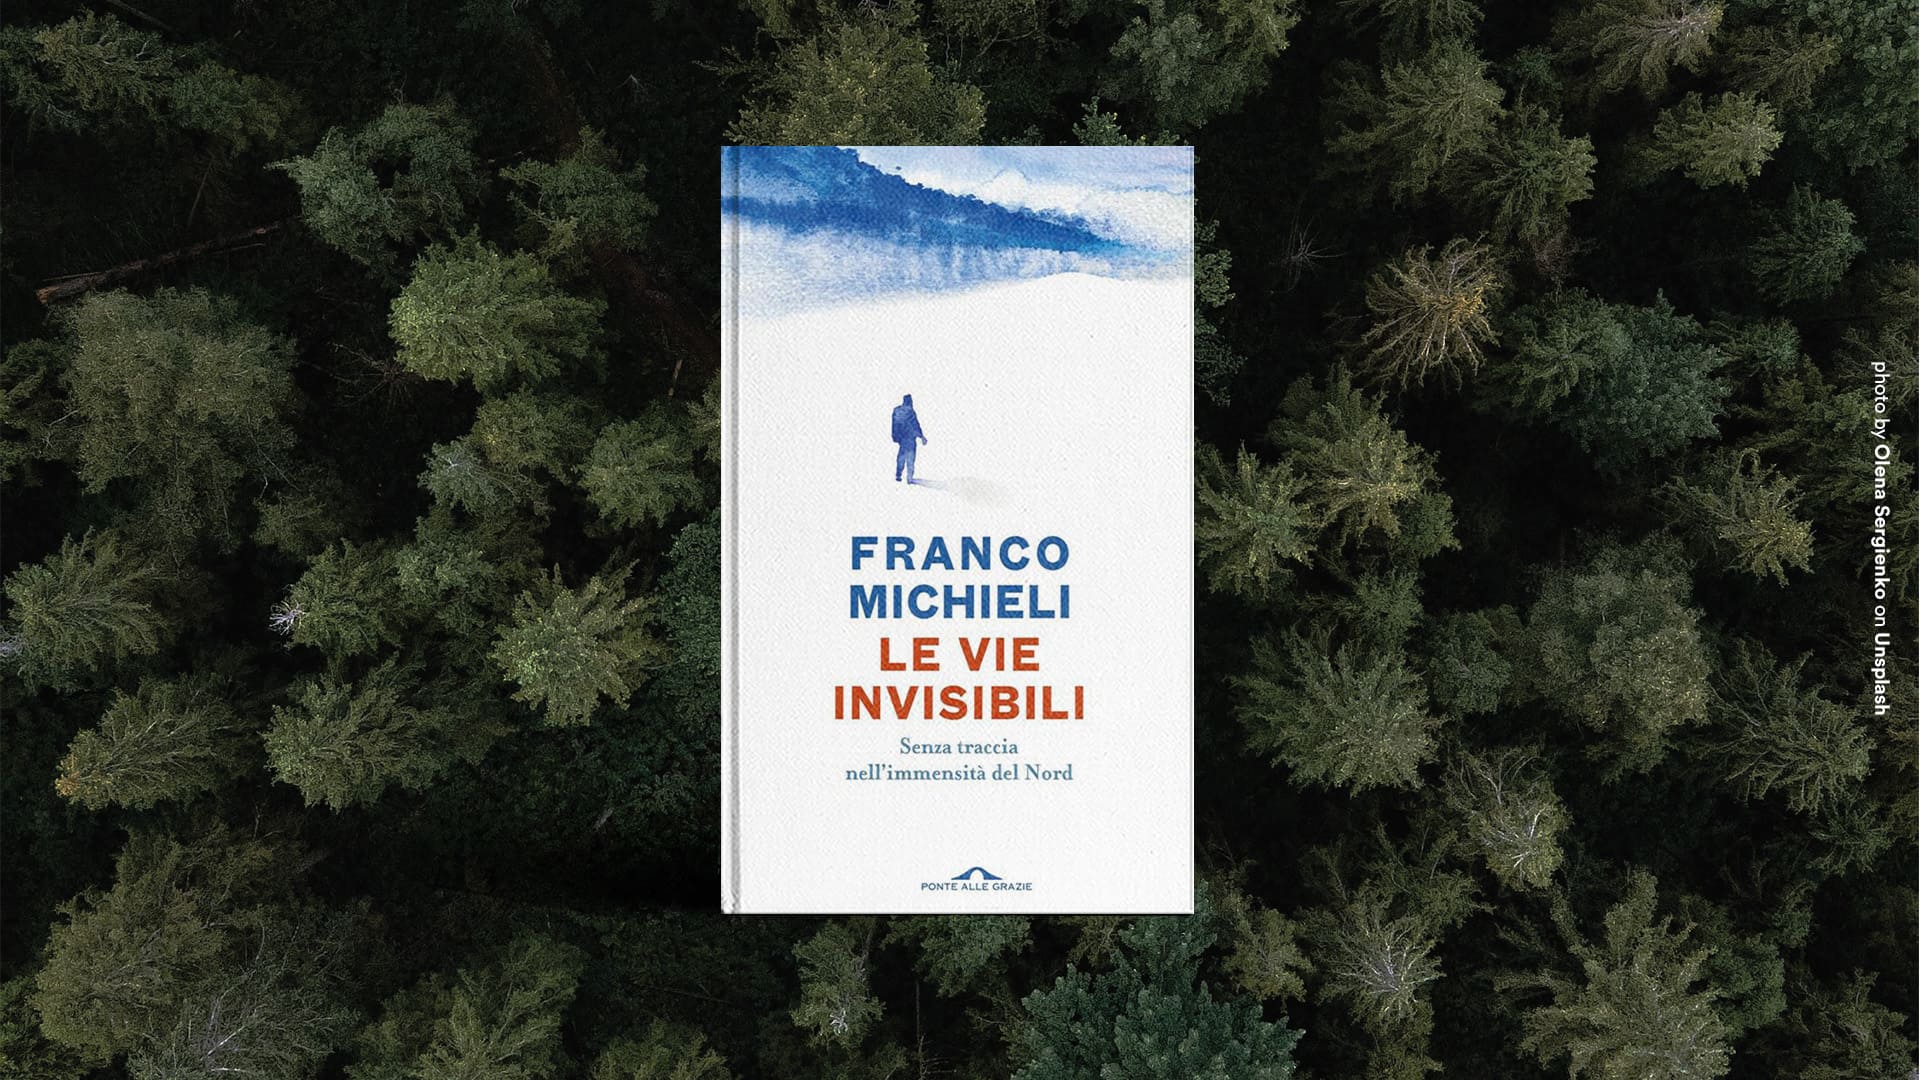 Franco-Michieli-Le-vie-invisibili